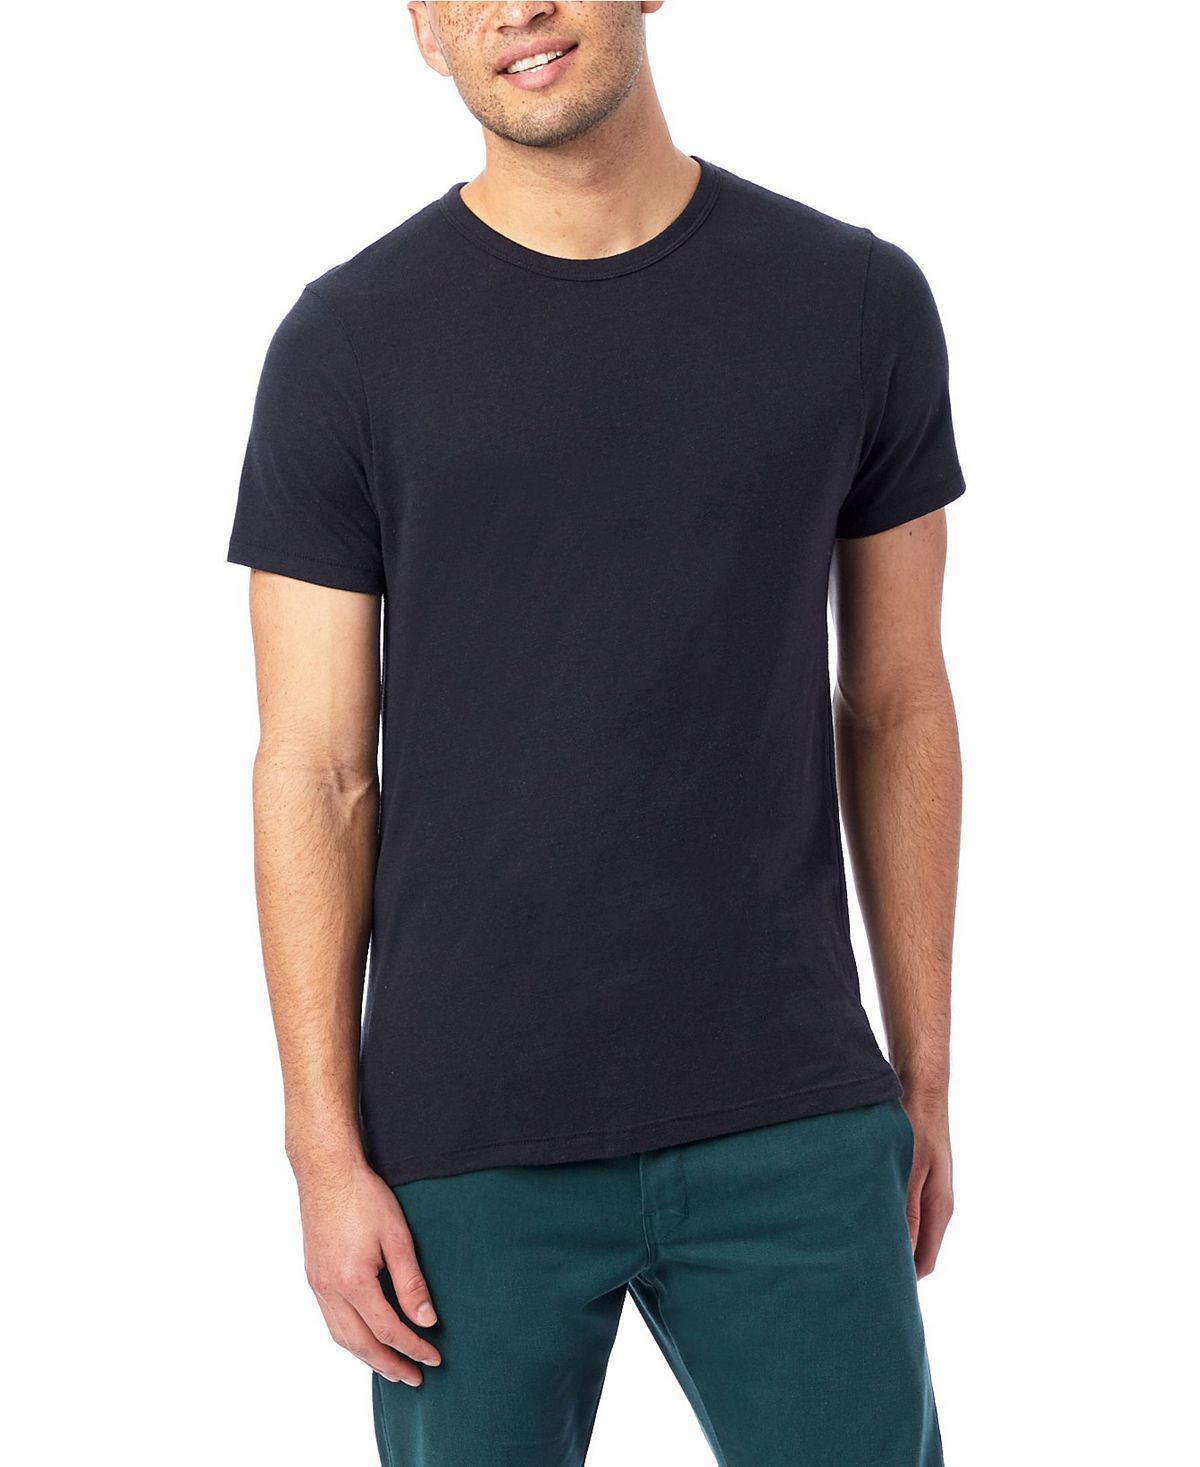 Мужская футболка из эко-джерси с круглым вырезом Alternative Apparel фото